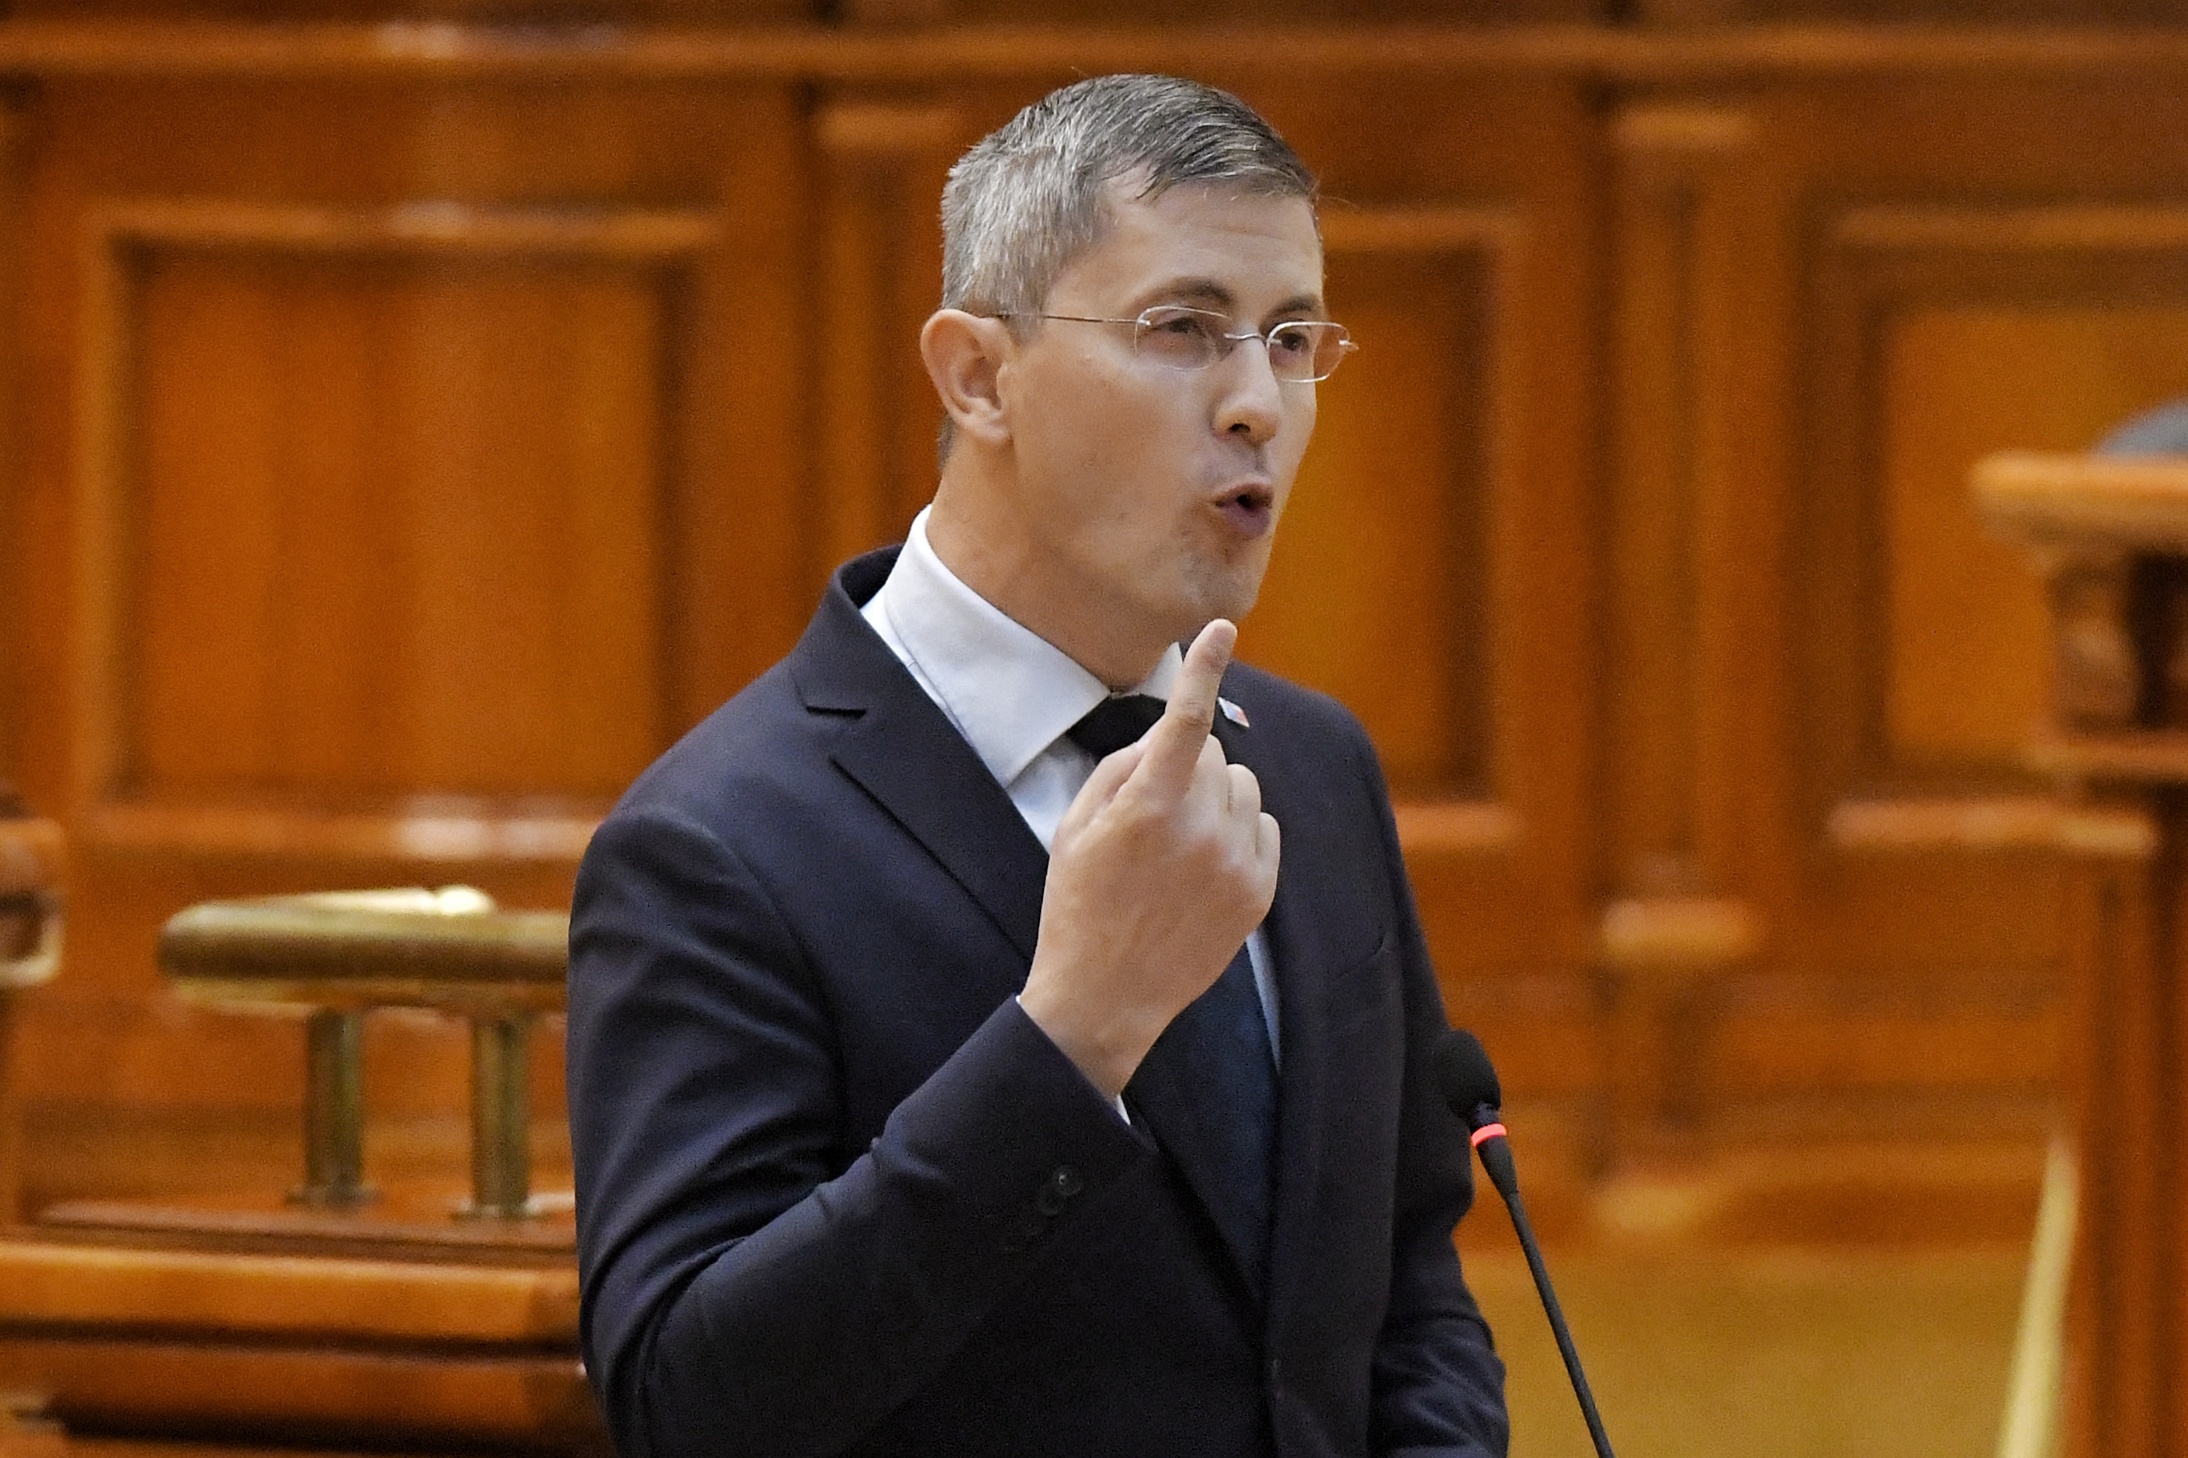 Barna i-a cerut lui Orban ca următorul guvern să aibă ca obiectiv alegerea primarilor în două tururi